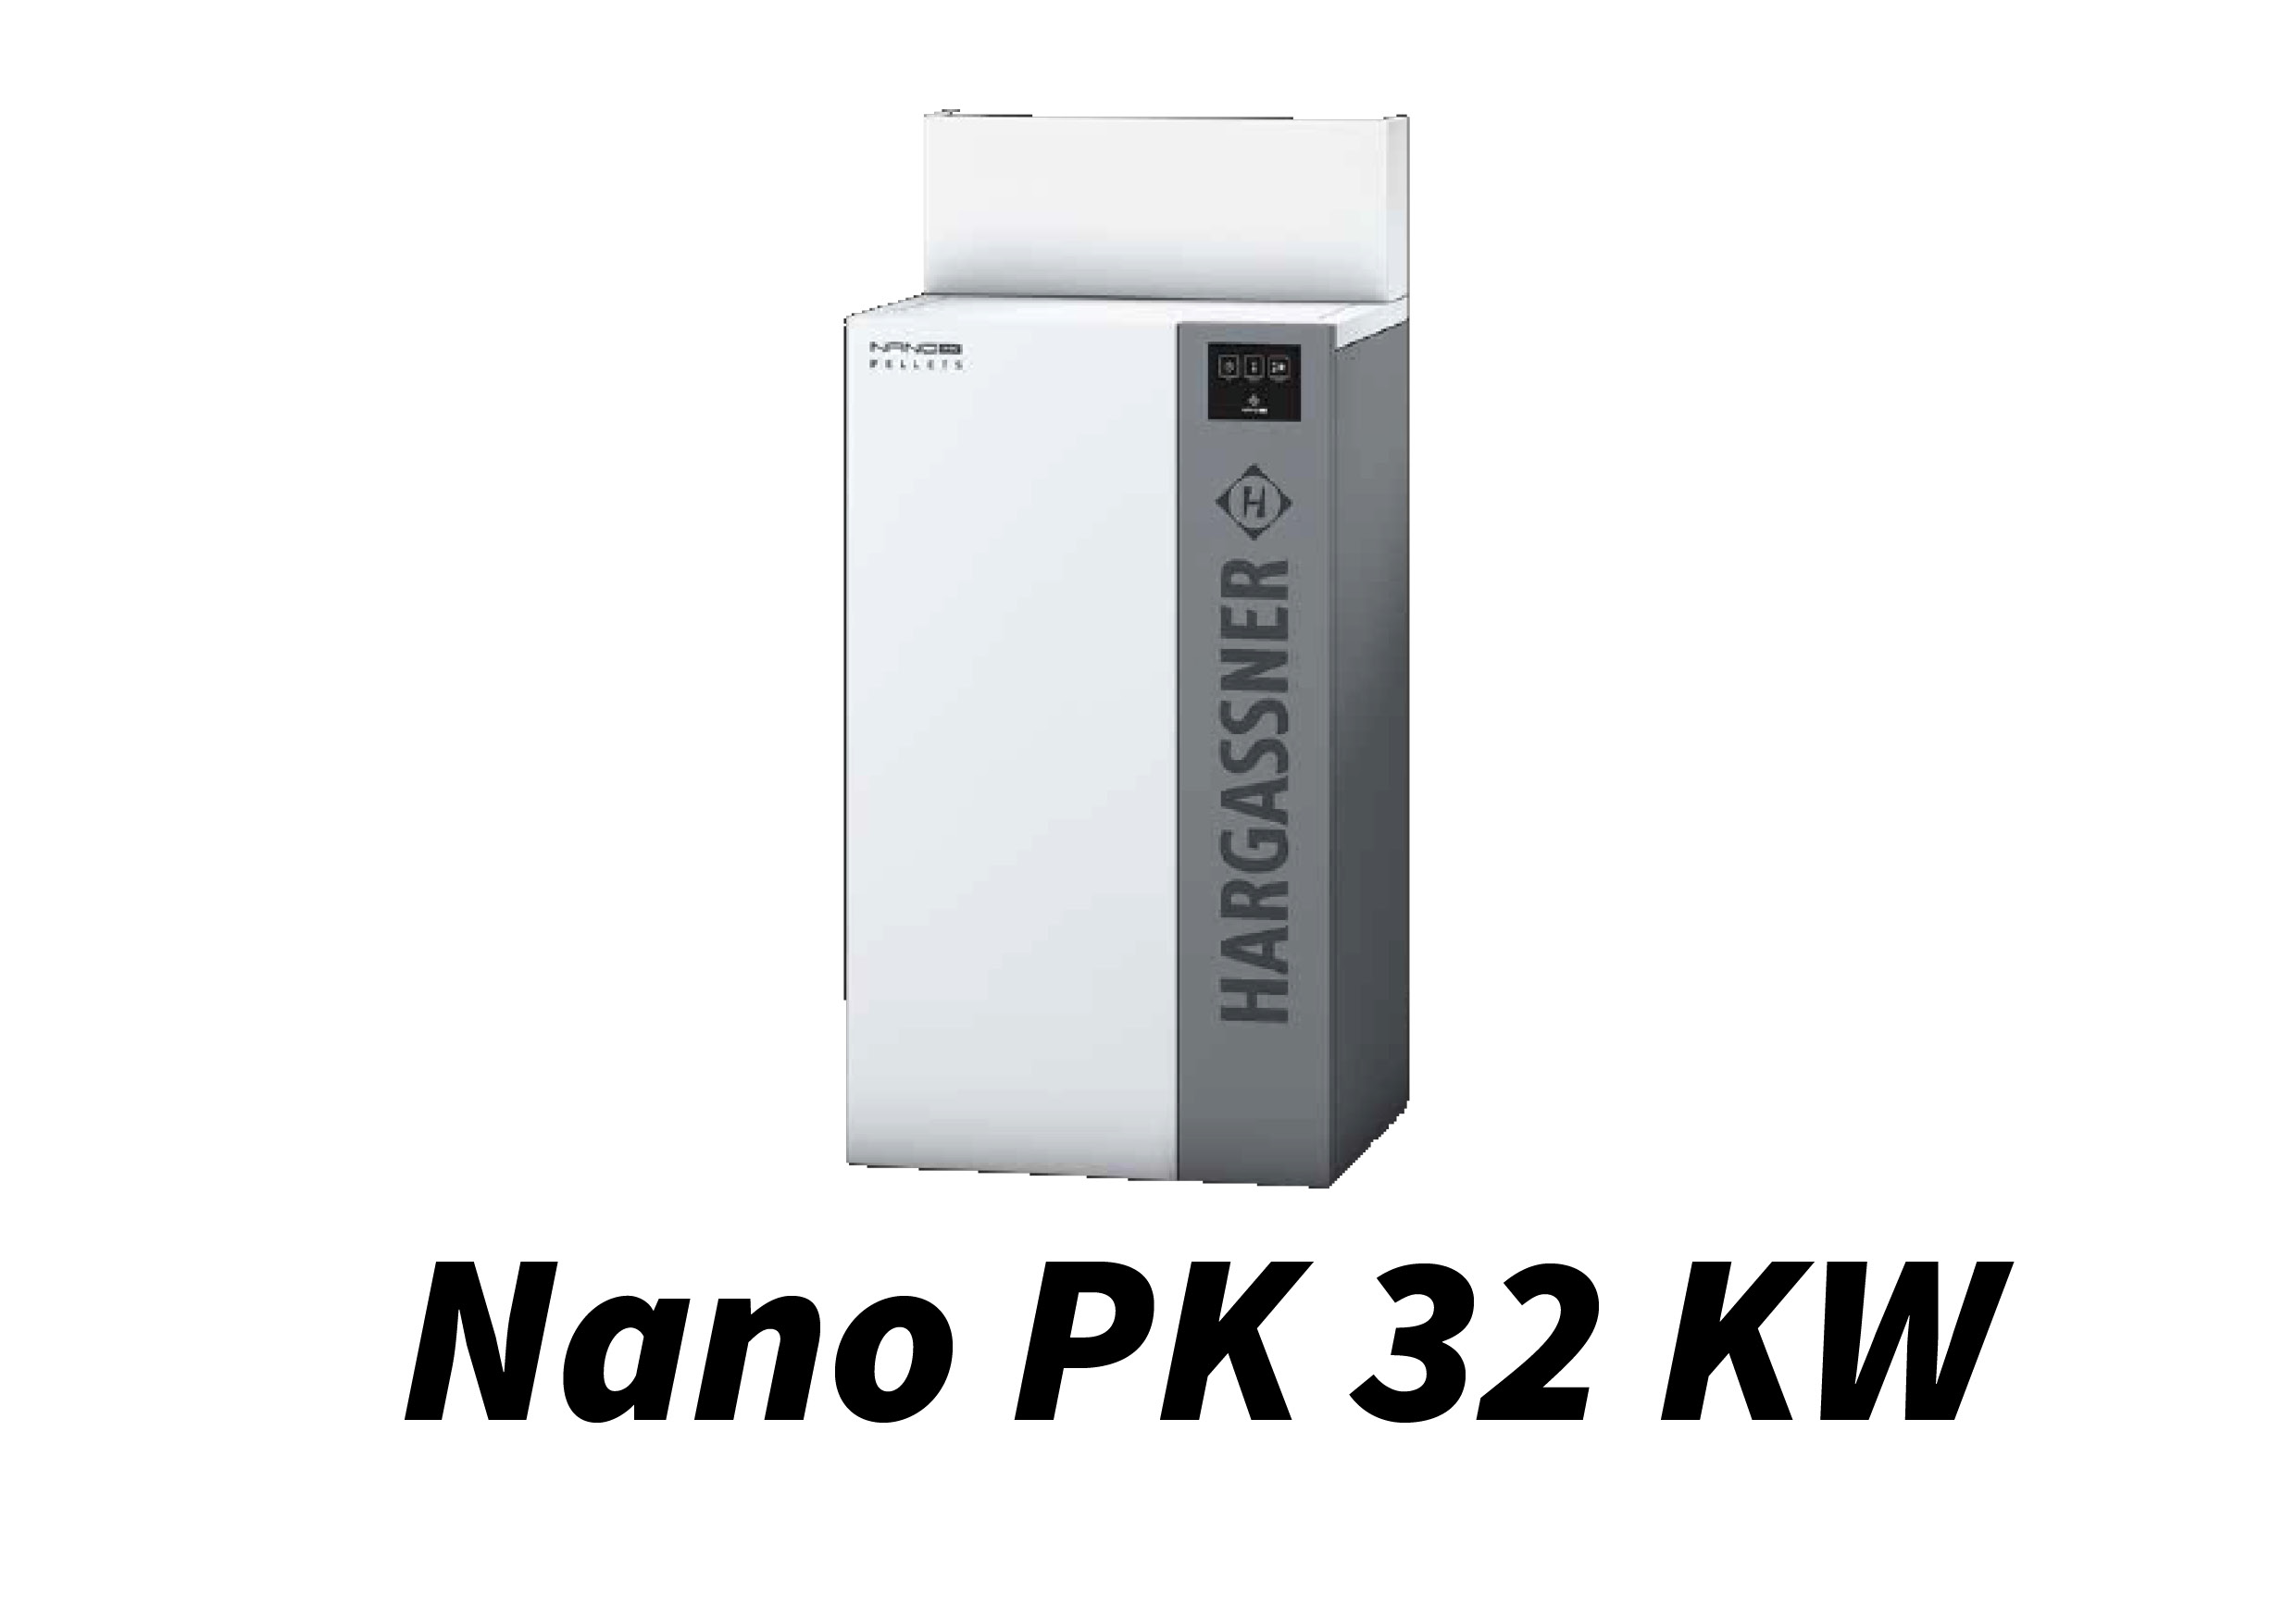 Nano PK 32 kW